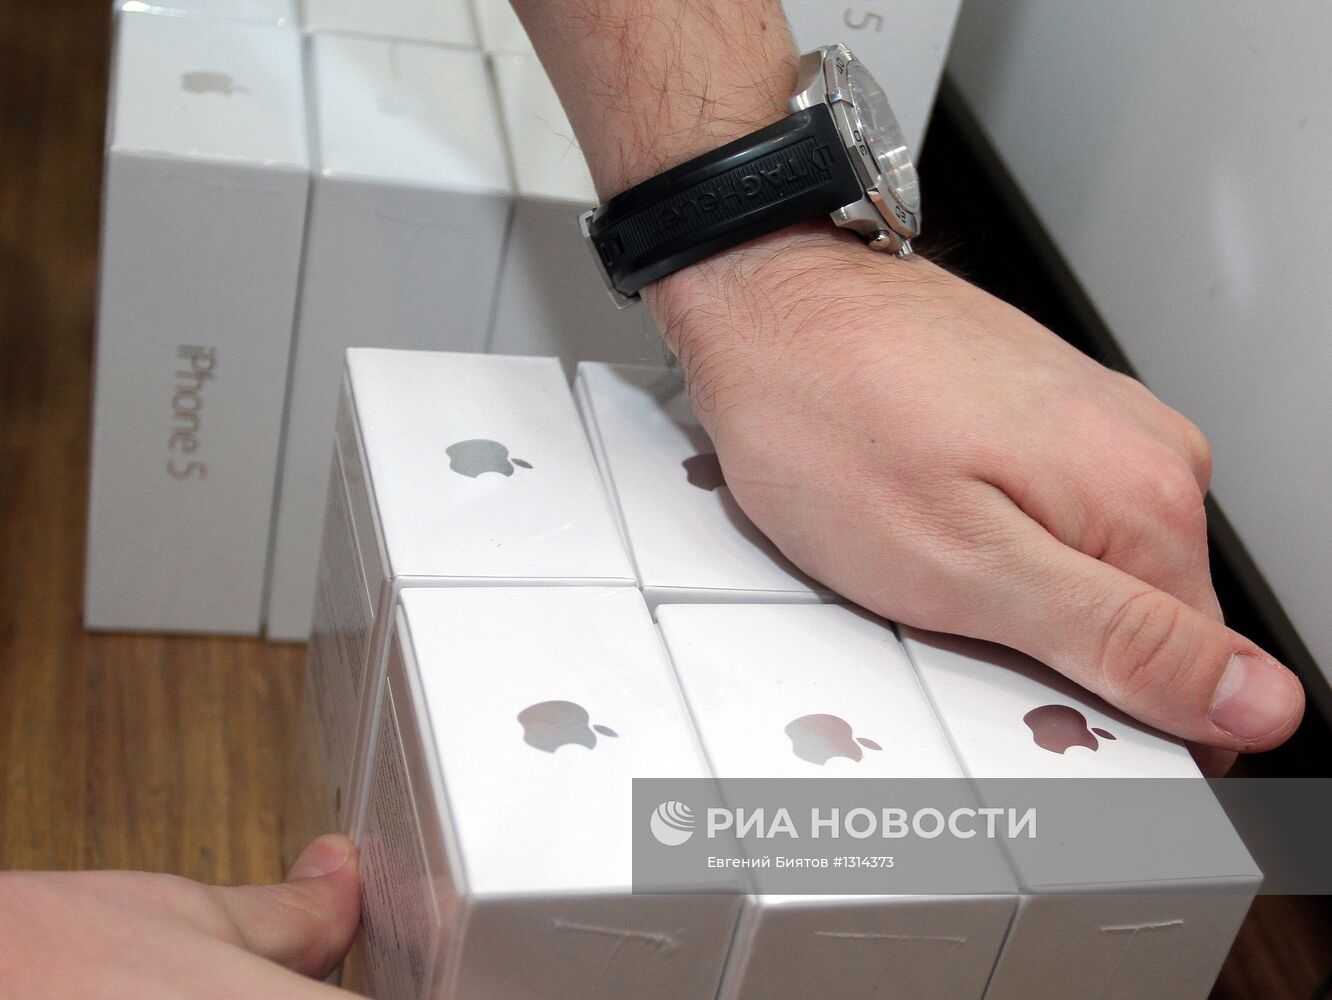 Официальный старт продажи iPhone 5 в России